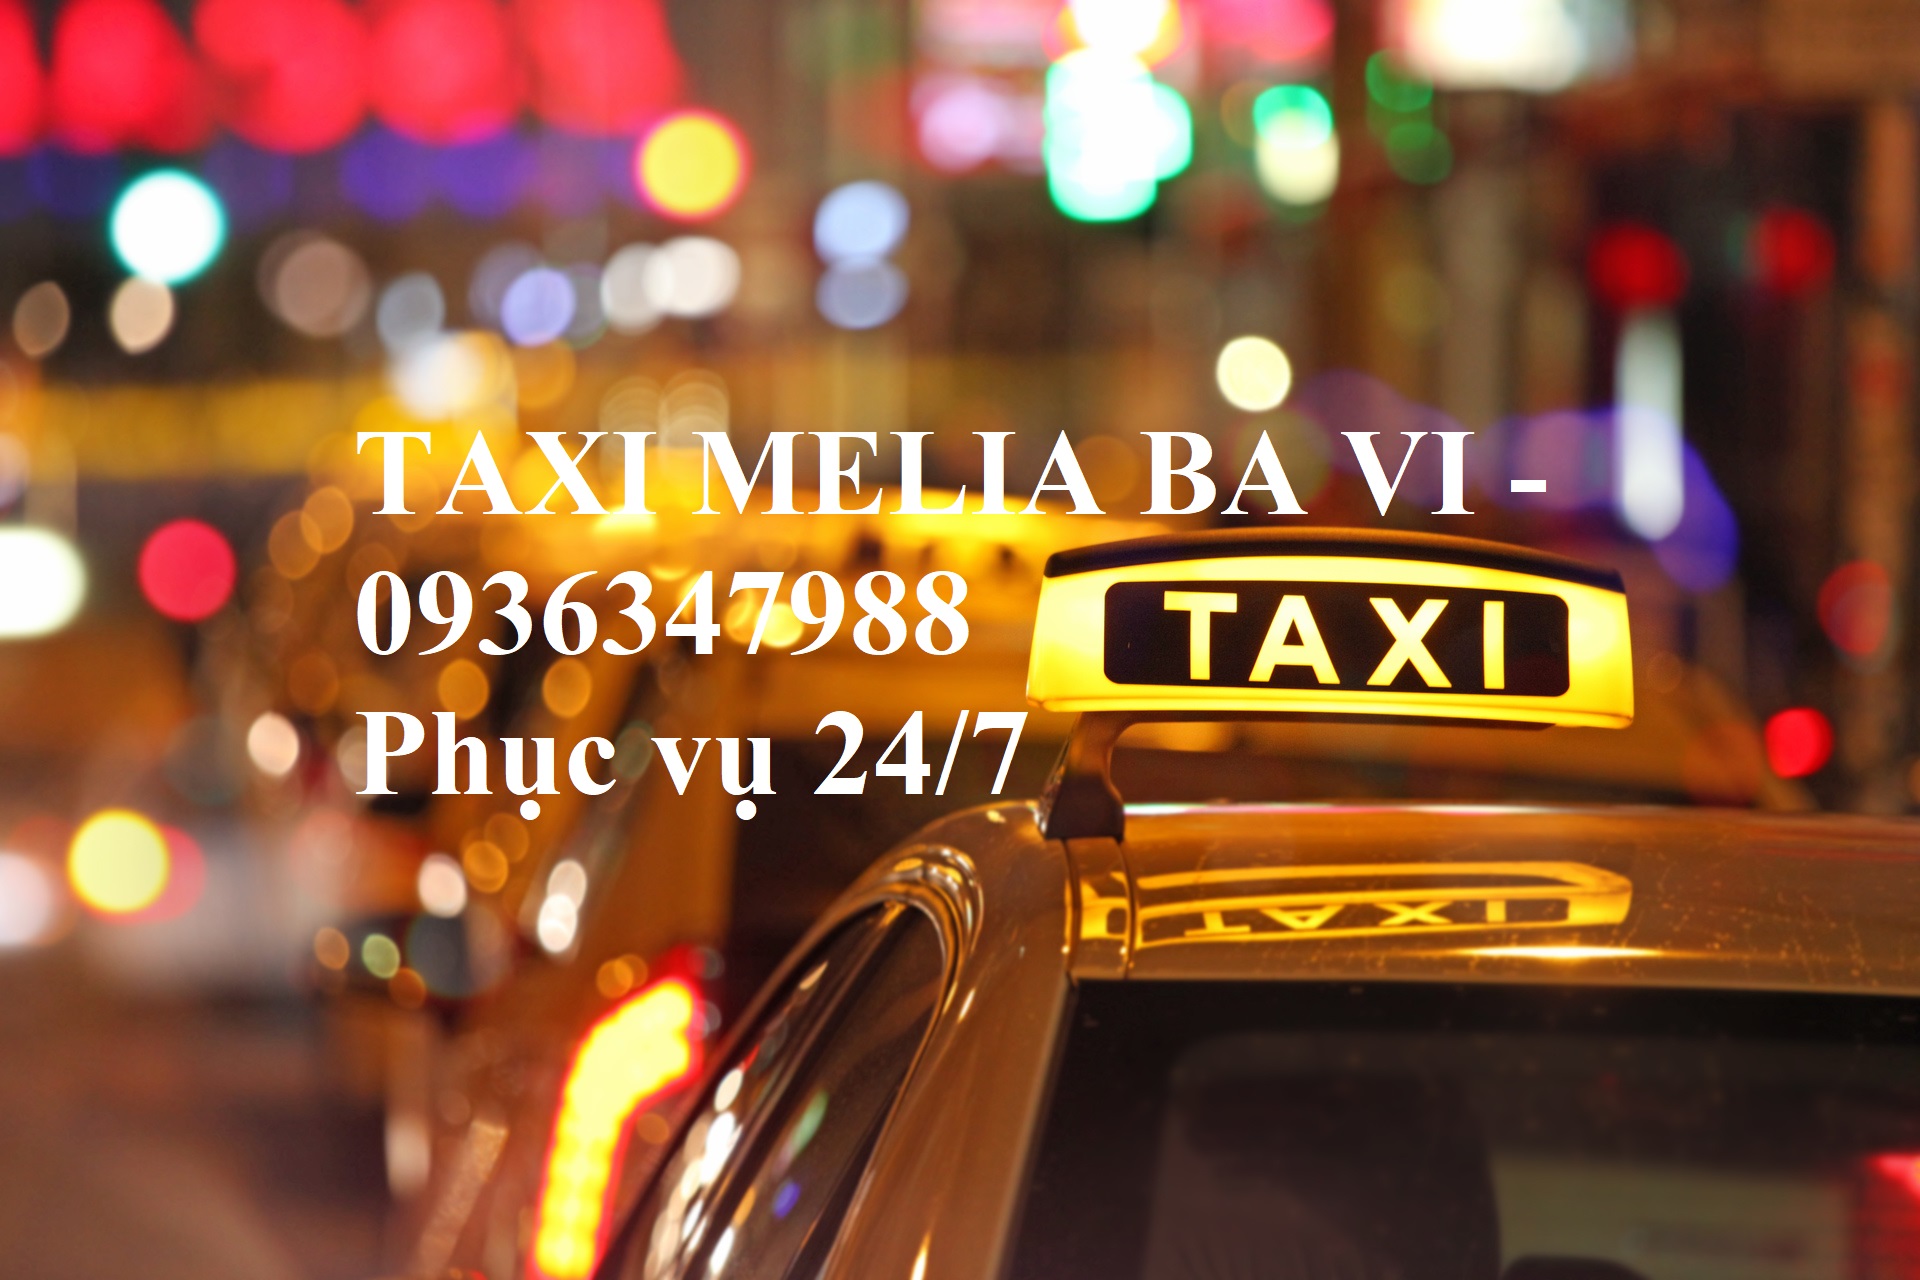 Dịch Vụ Taxi Resort Melia Ba Vì